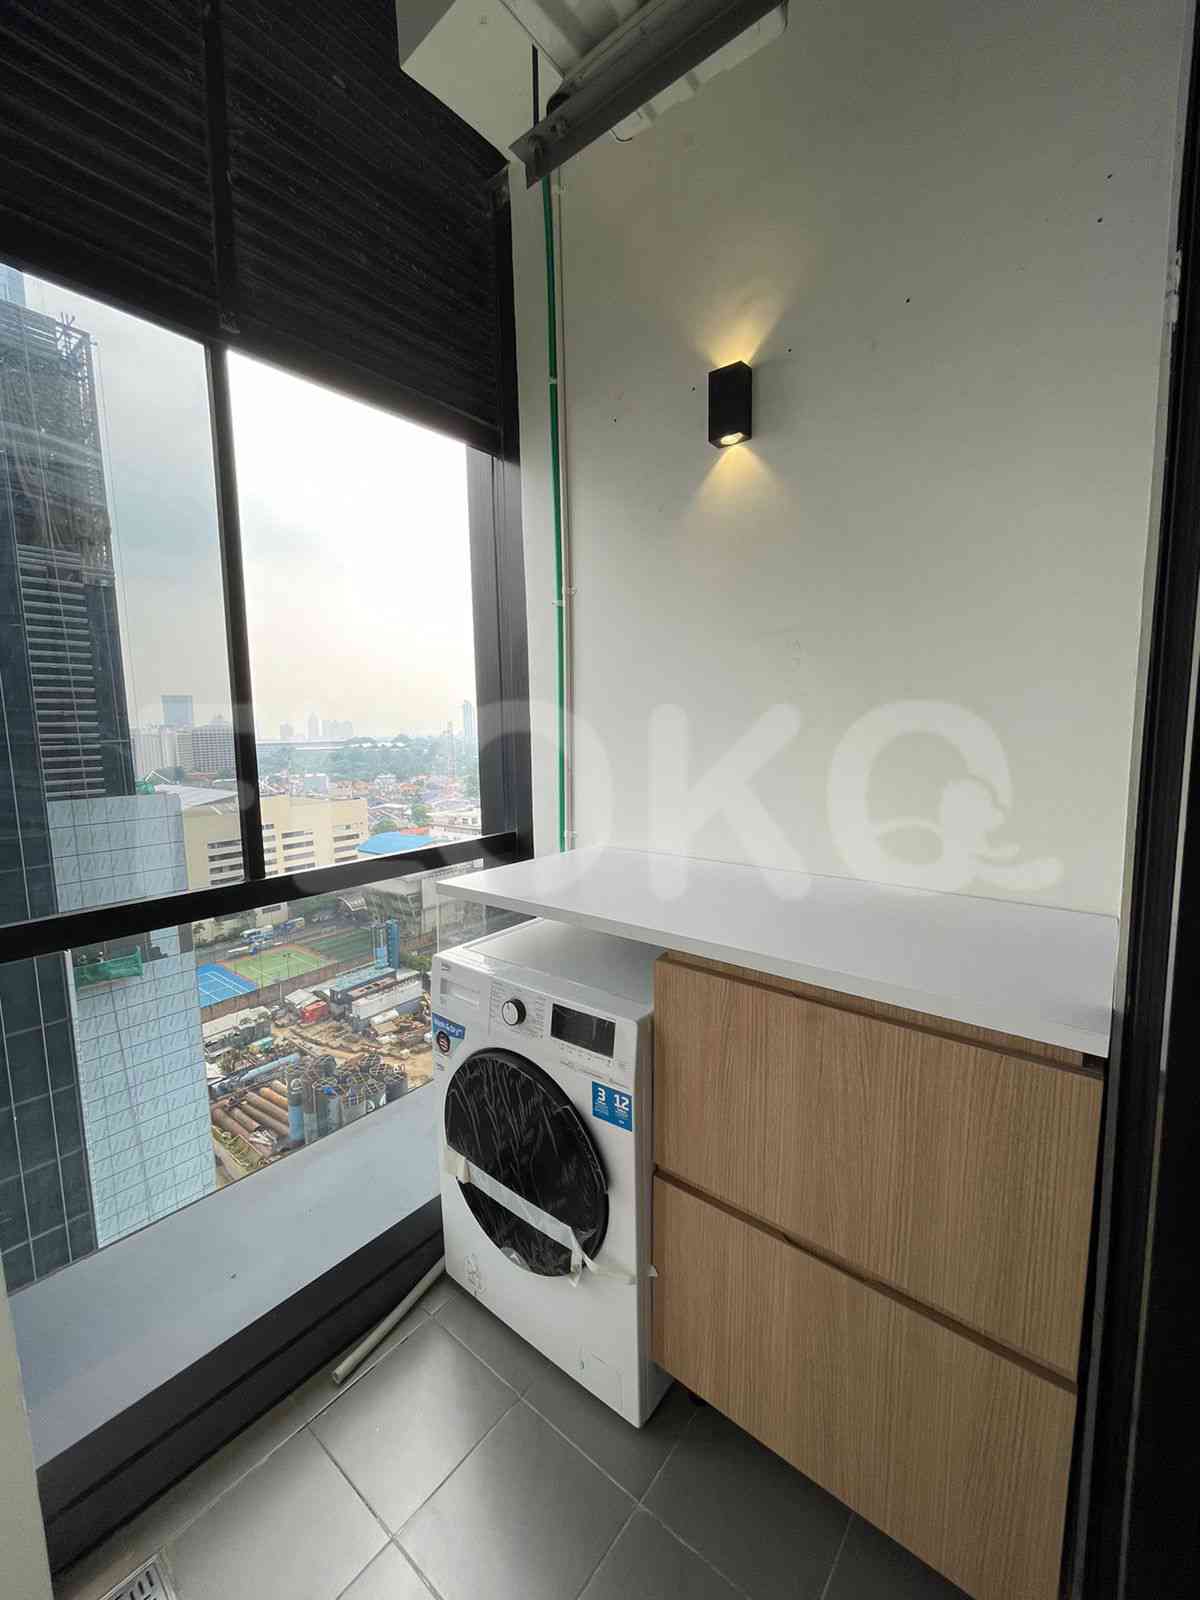 3 Bedroom on 10th Floor for Rent in Sudirman Suites Jakarta - fsuaf7 8